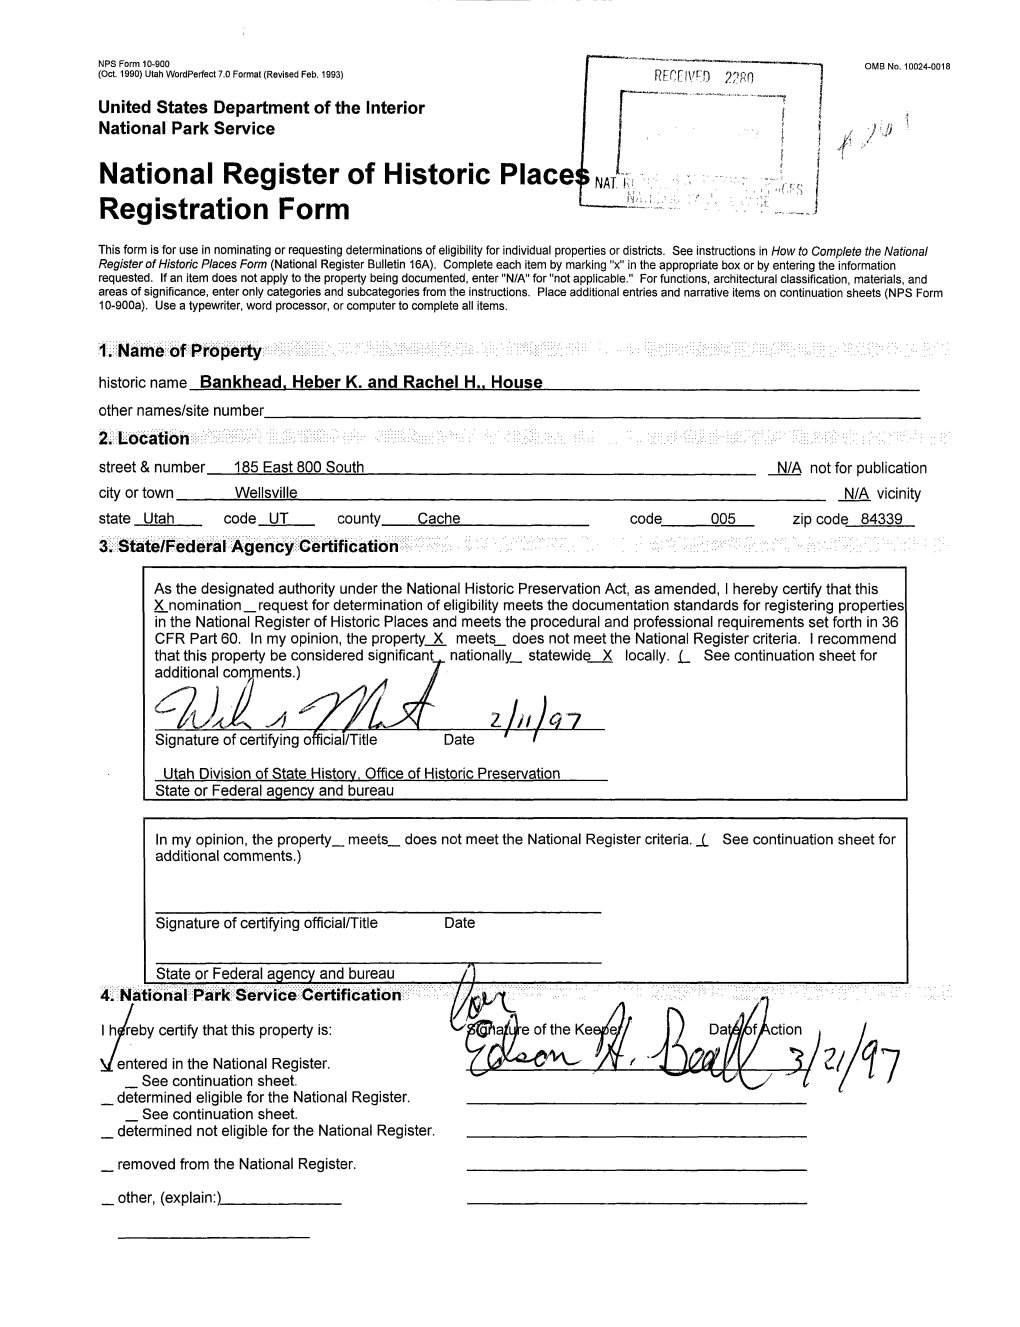 National Register of Historic Places ; Registration Form